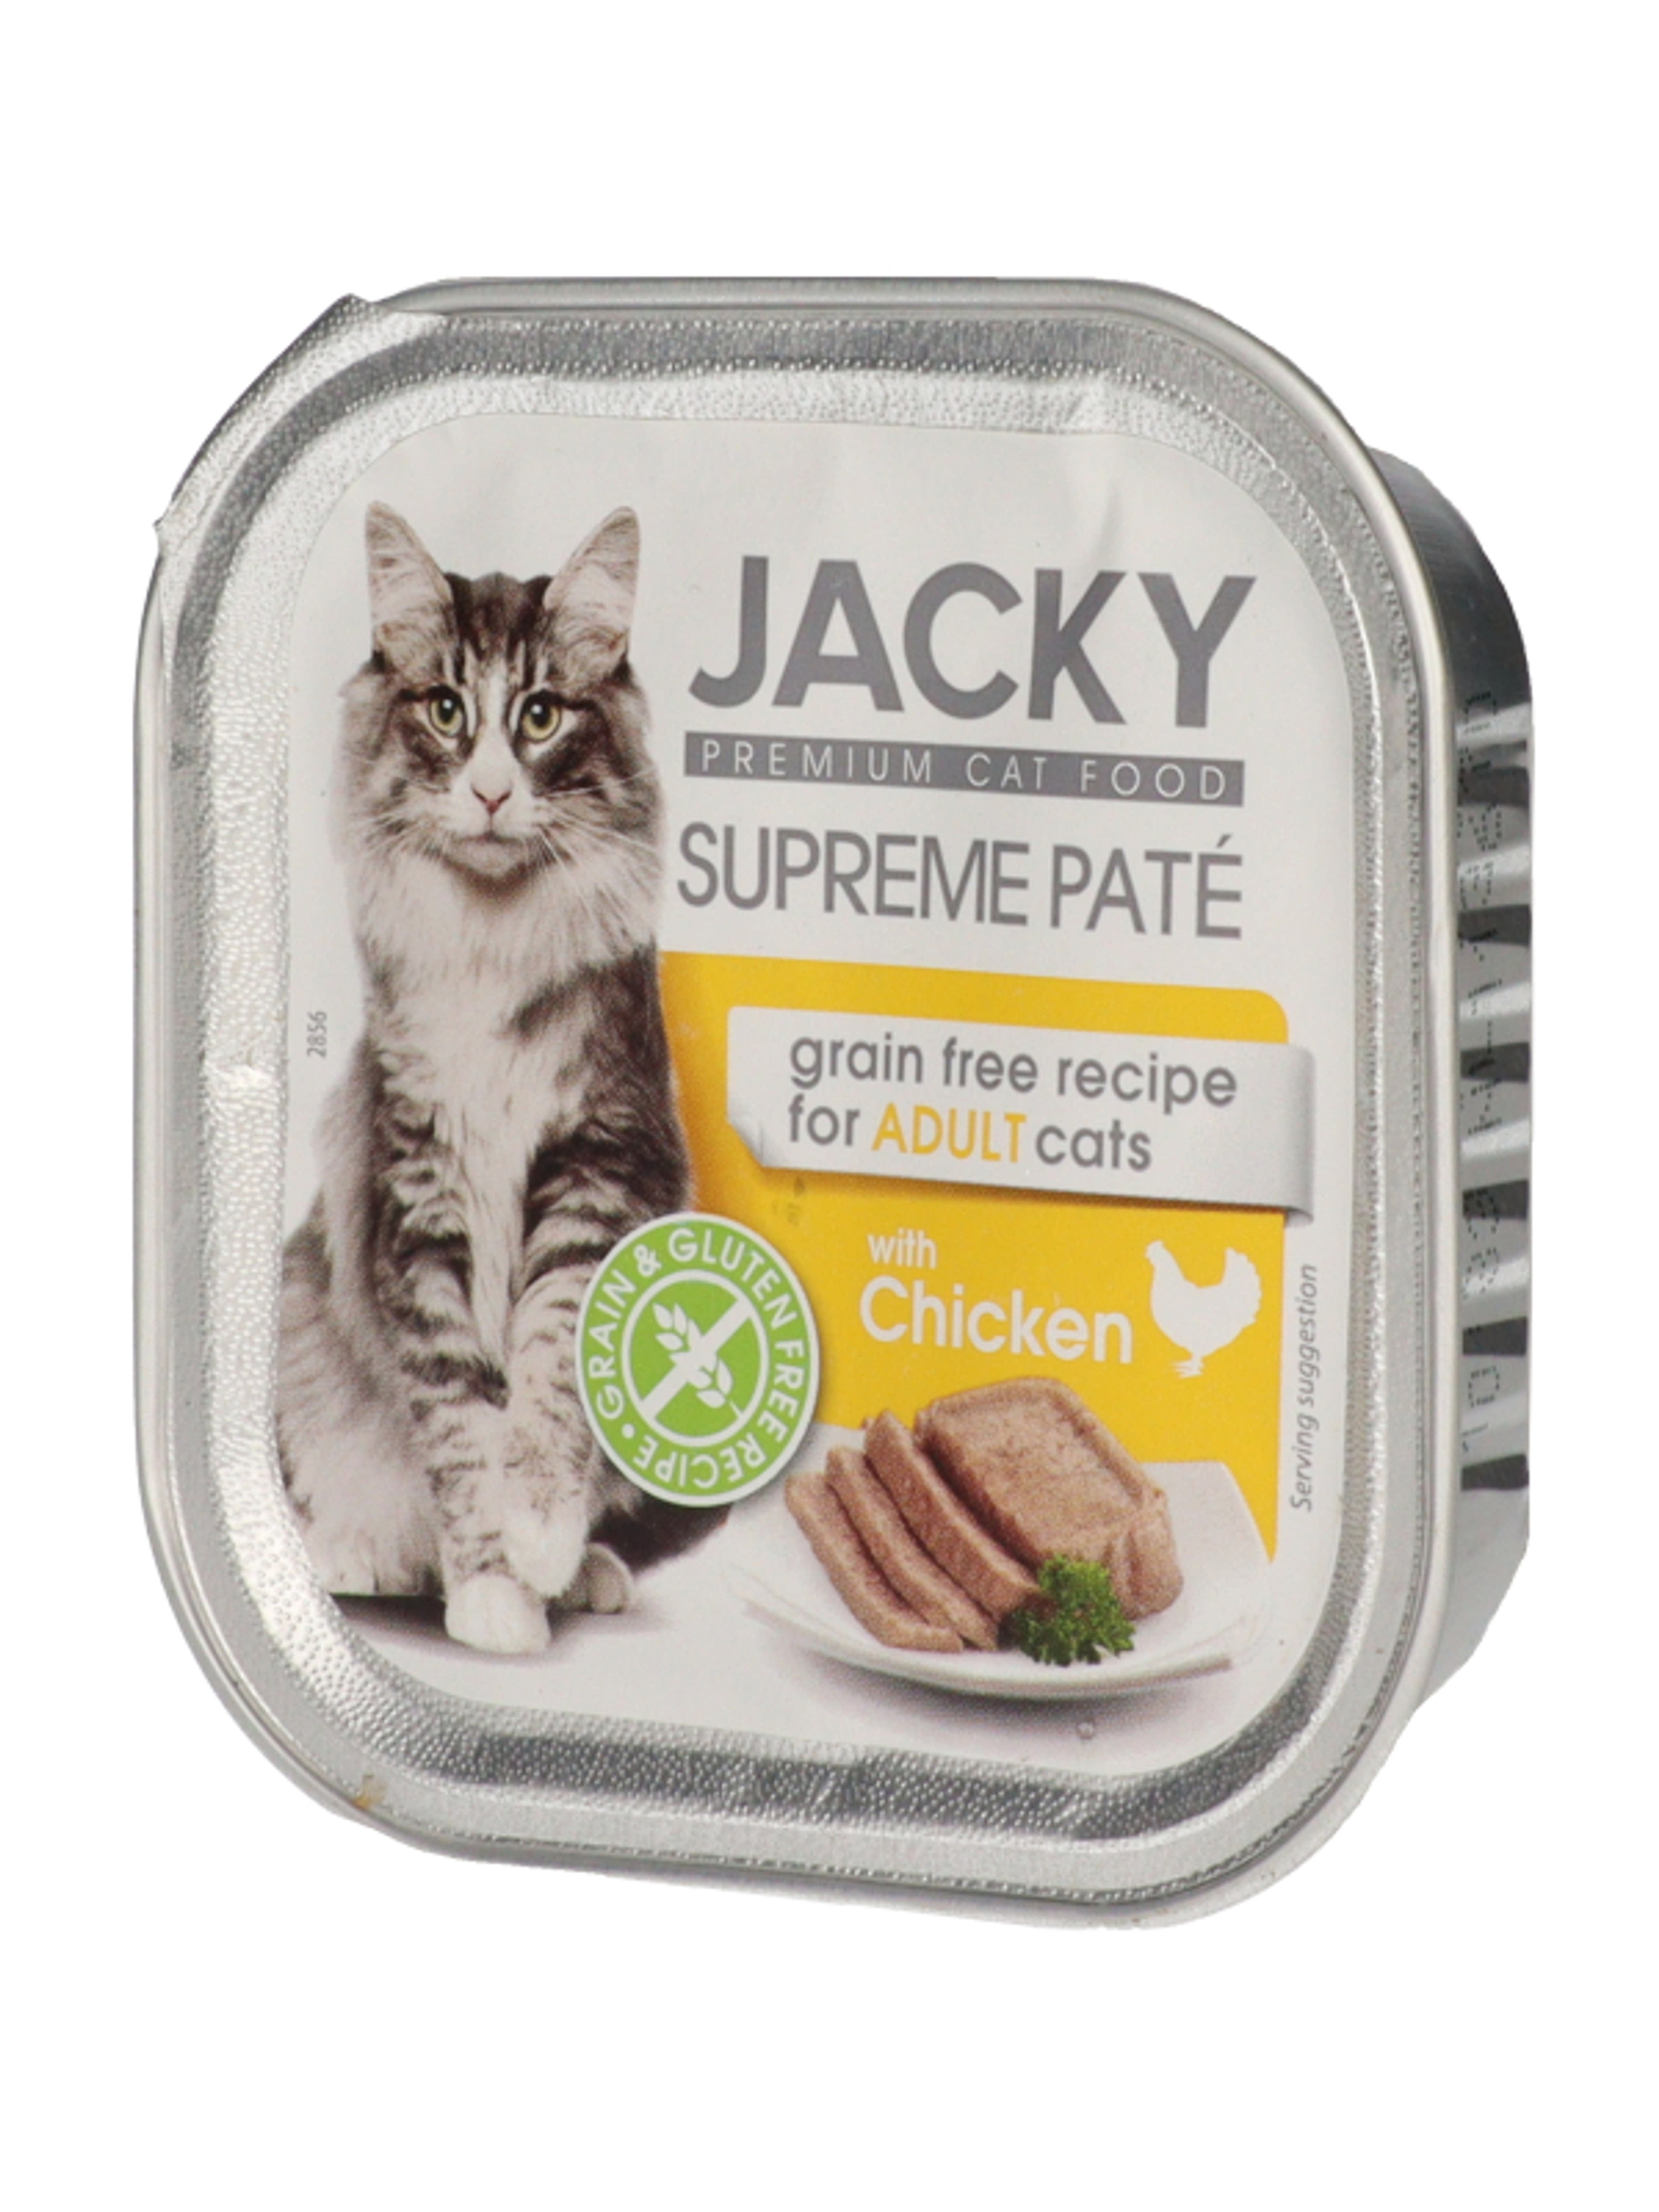 Jacky Supreme alutál pástétom macskáknak csirke ízesítéssel - 100 g-3